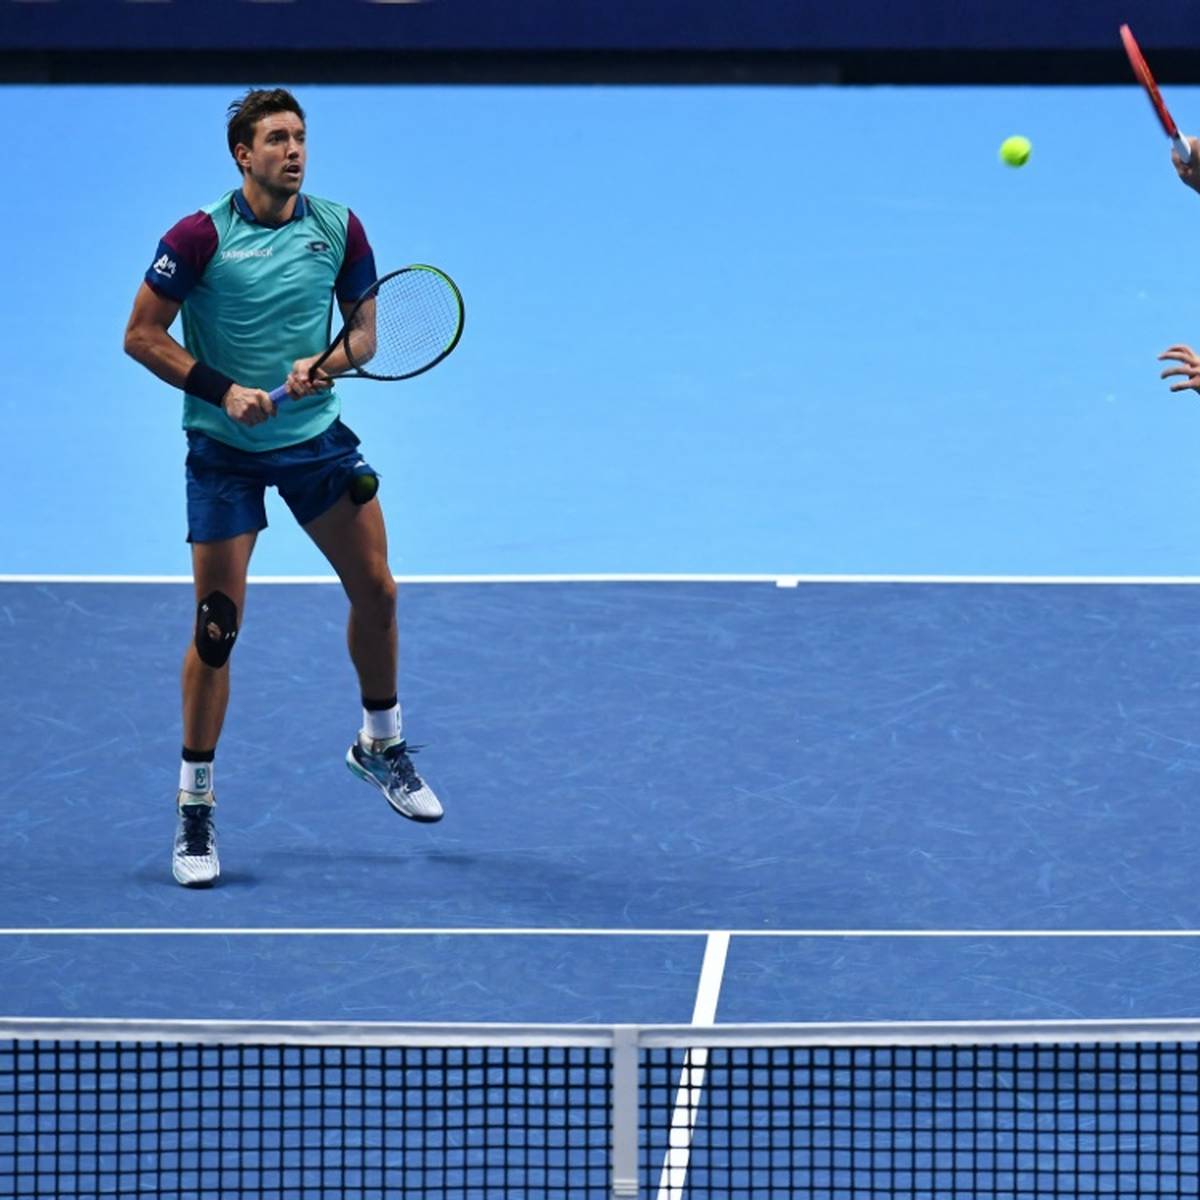 Das wiedervereinte Erfolgsdoppel Kevin Krawietz/Andreas Mies hat bei den Australian Open erstmals das Achtelfinale erreicht.